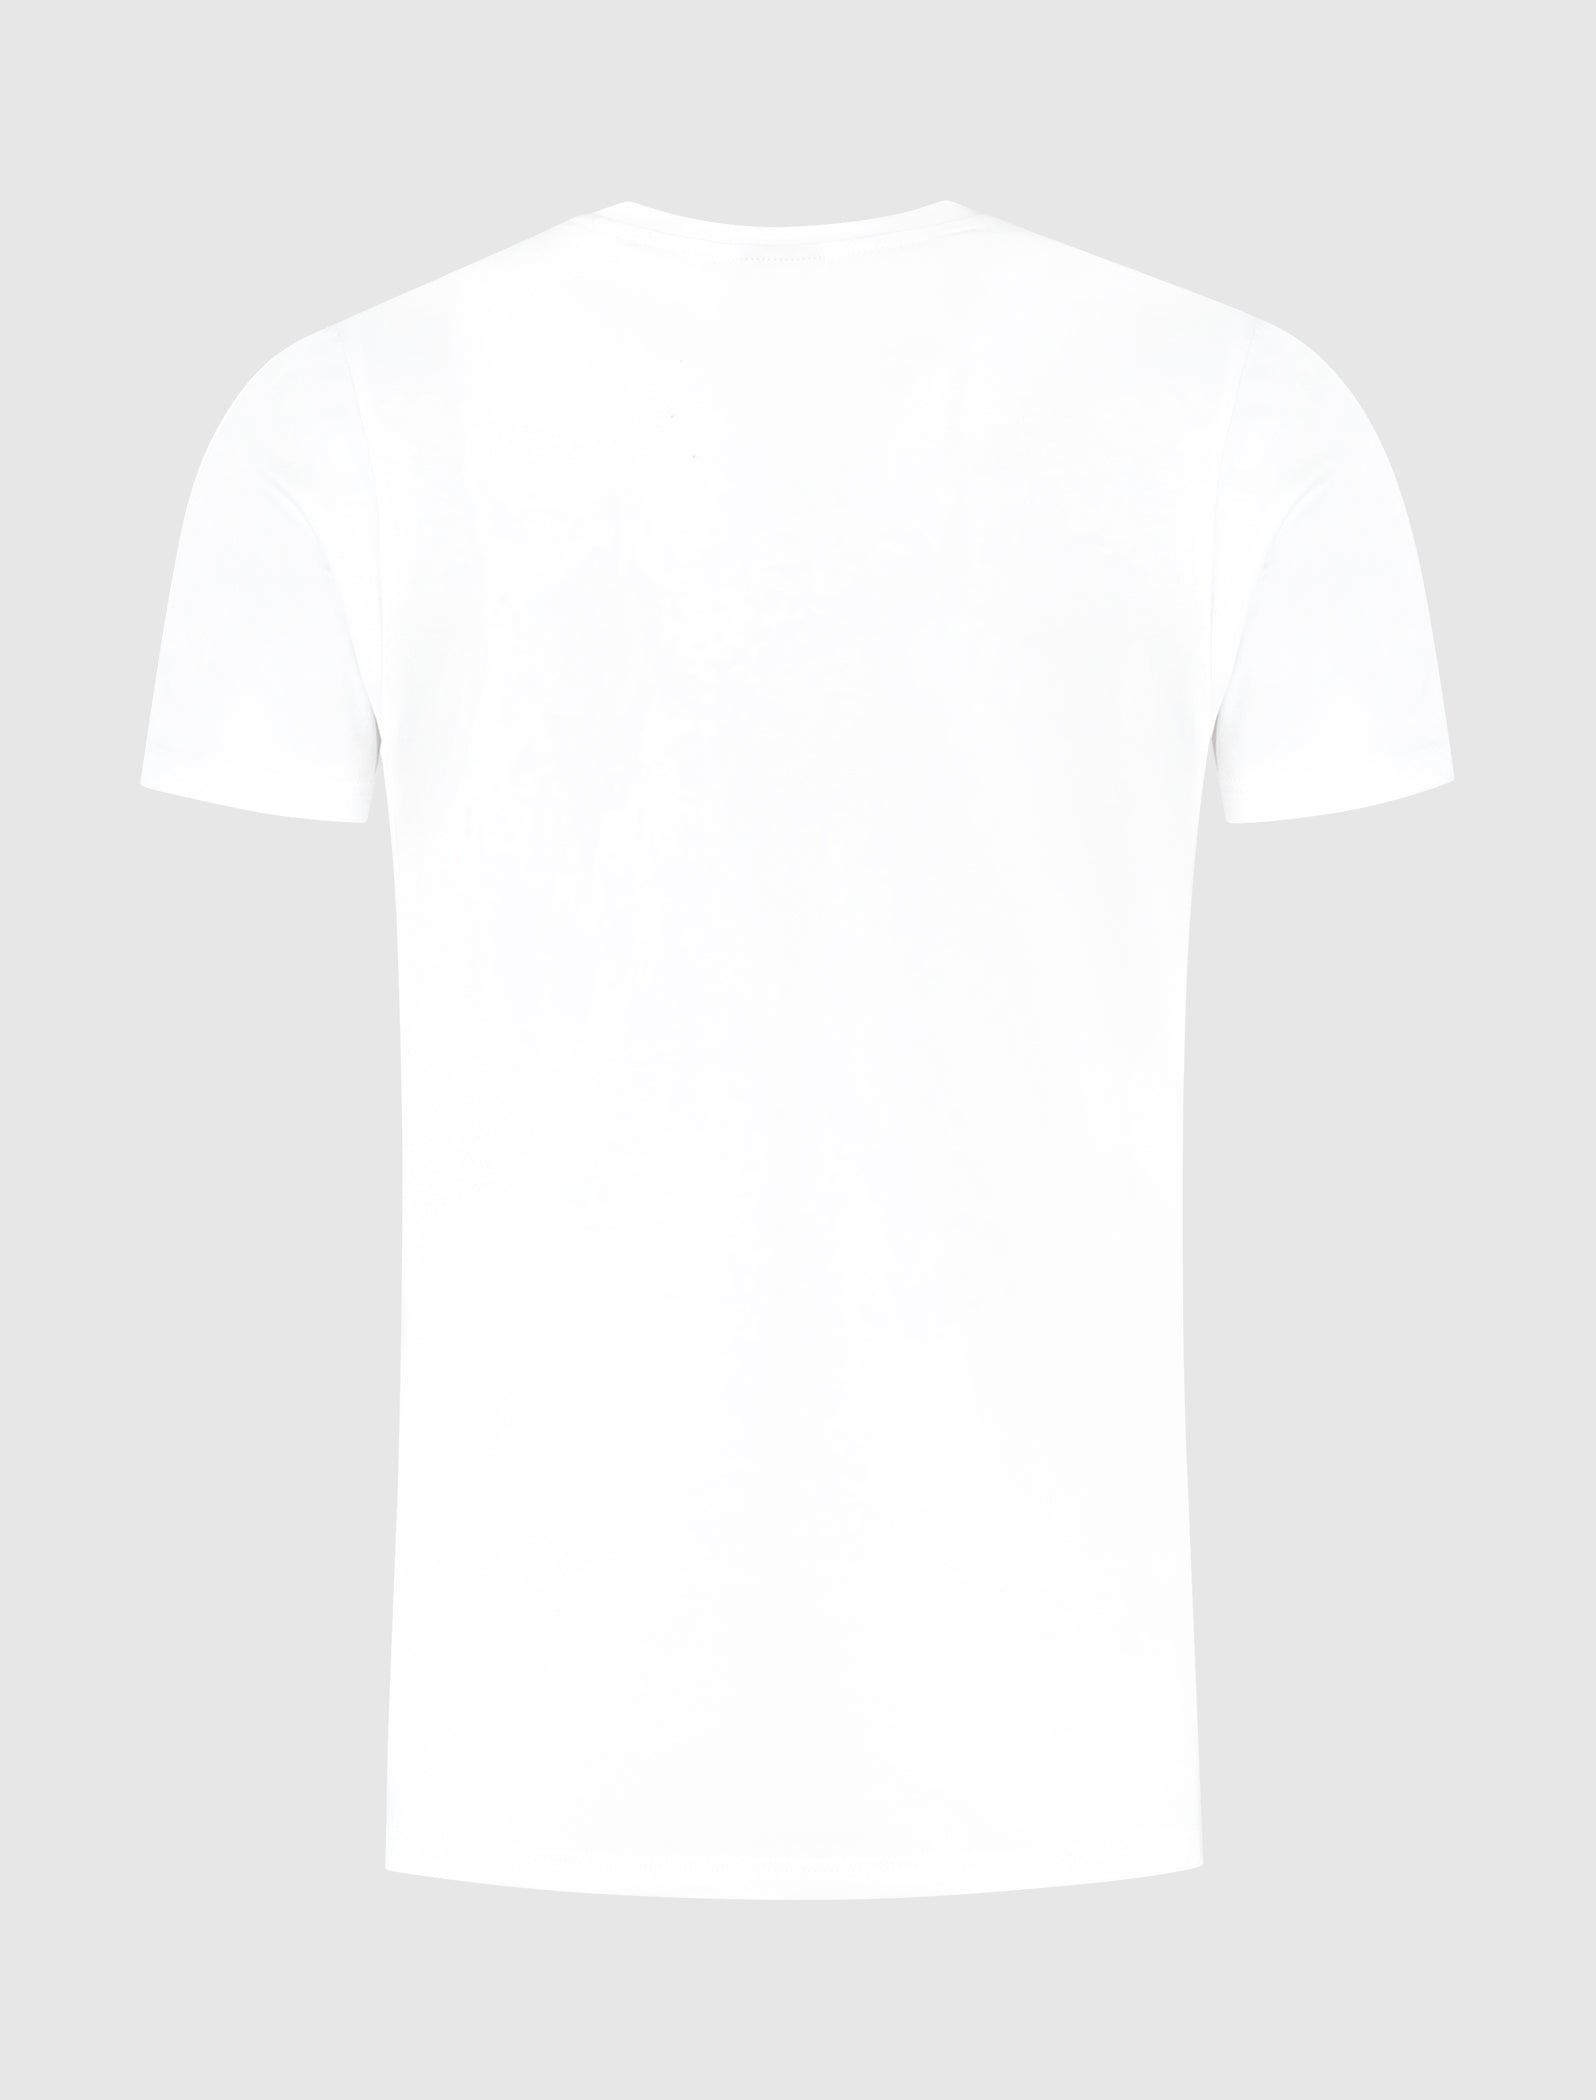 Reel Word Art T-shirt | White